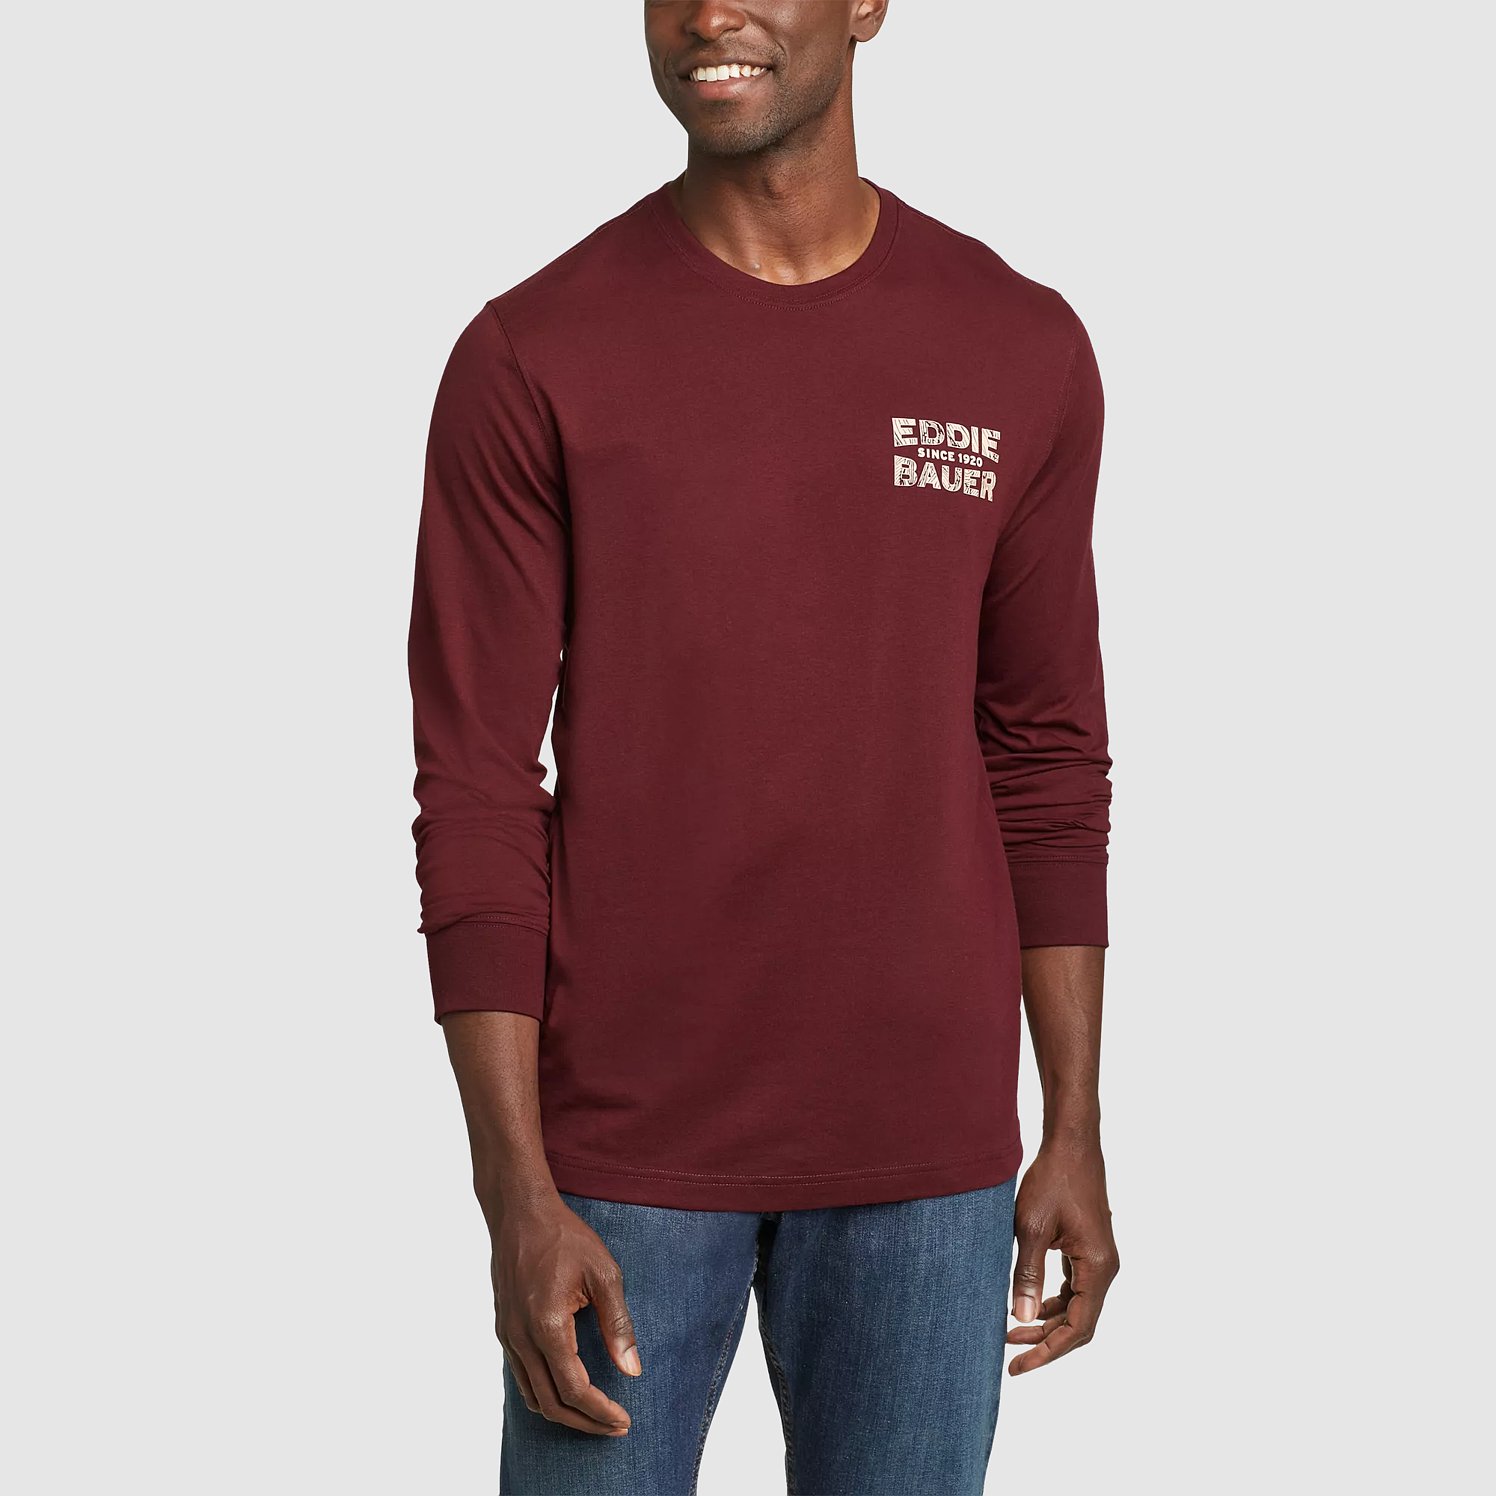 Eddie Bauer Graphic T-Shirt - Mountain Bear - Burgundy - Size M